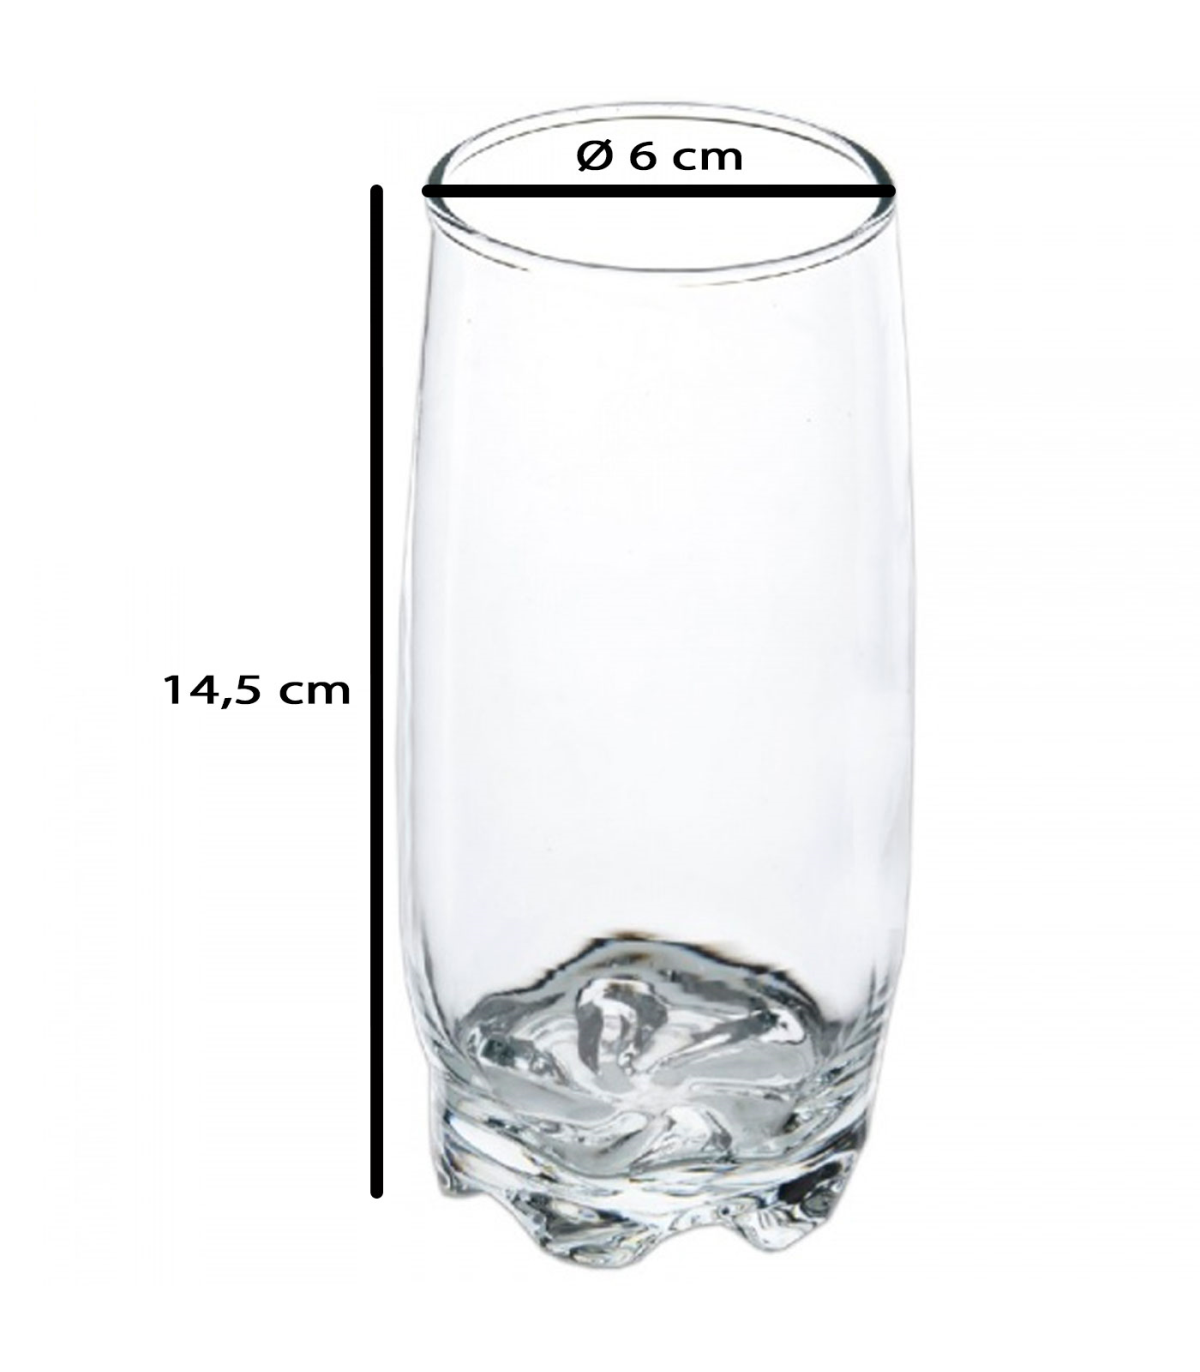 Tradineur - Set de 12 vasos de cristal modelo Ruta, vasos clásicos para  agua, bebidas, resistentes, aptos para lavavajillas (36